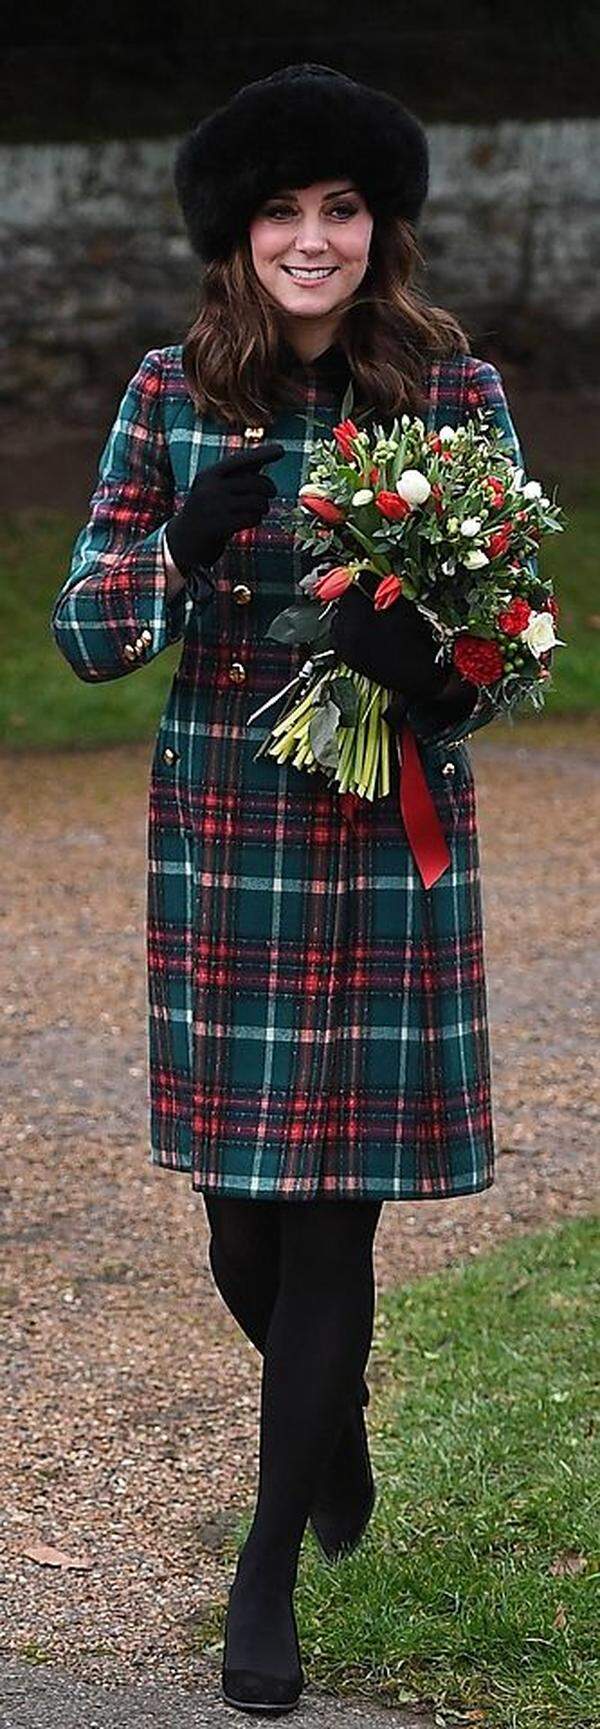 Sollten Sie jemals nach Inspiration für festive dressing gesucht haben: Look no further. Die Herzogin von Cambridge hilft Ihnen gerne weiter. Als verspätetes Weihnachtsgeschenk, quasi. (Und falls Sie auch noch Beratung in Sachen abgestimmter Blumenschmuck brauchen sollten - just ask.)